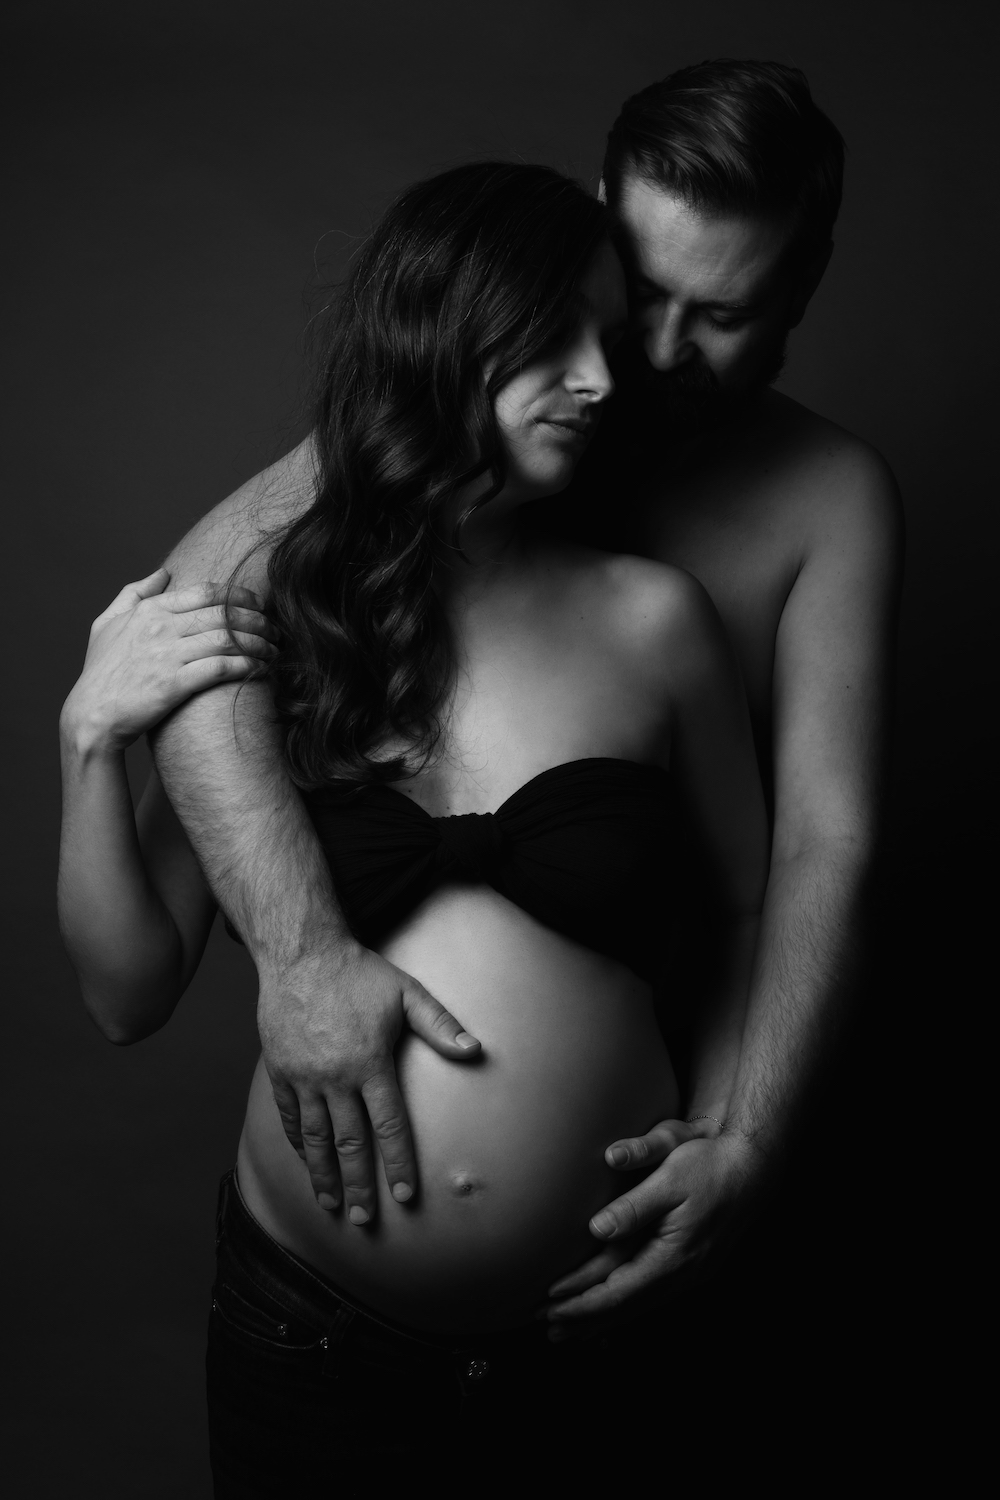 photographe recherche modele femme enceinte site de rencontre gratuit et sans inscription quebec